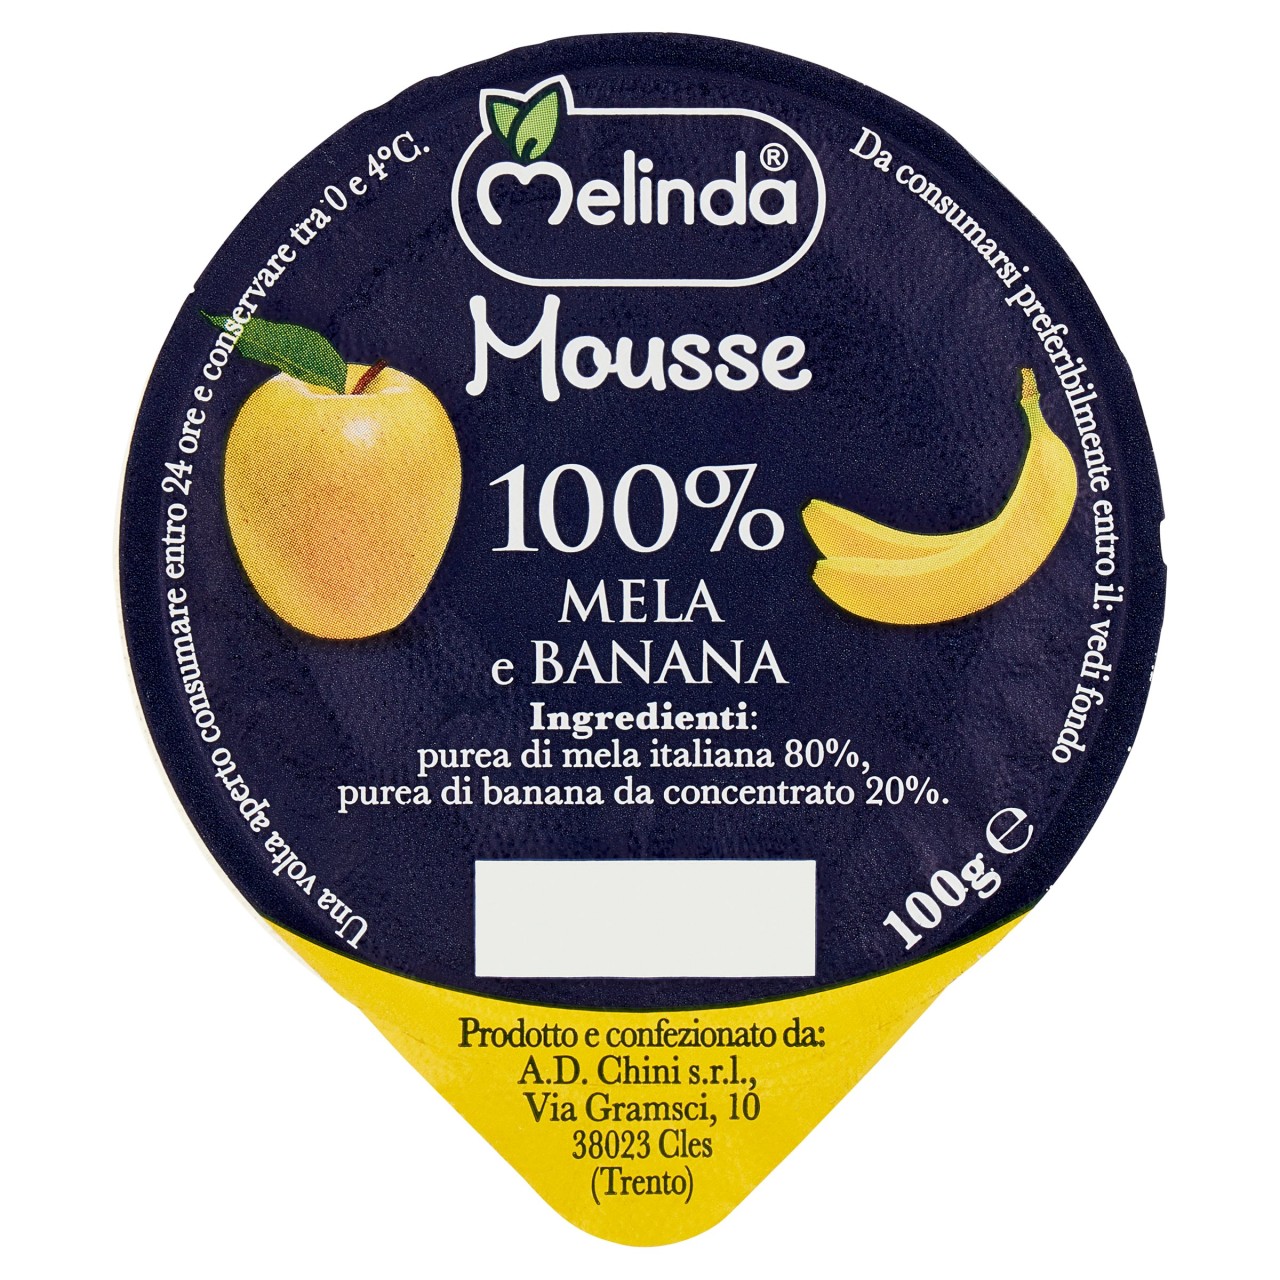 Melinda Mousse 100% Mela e Banana 100 g